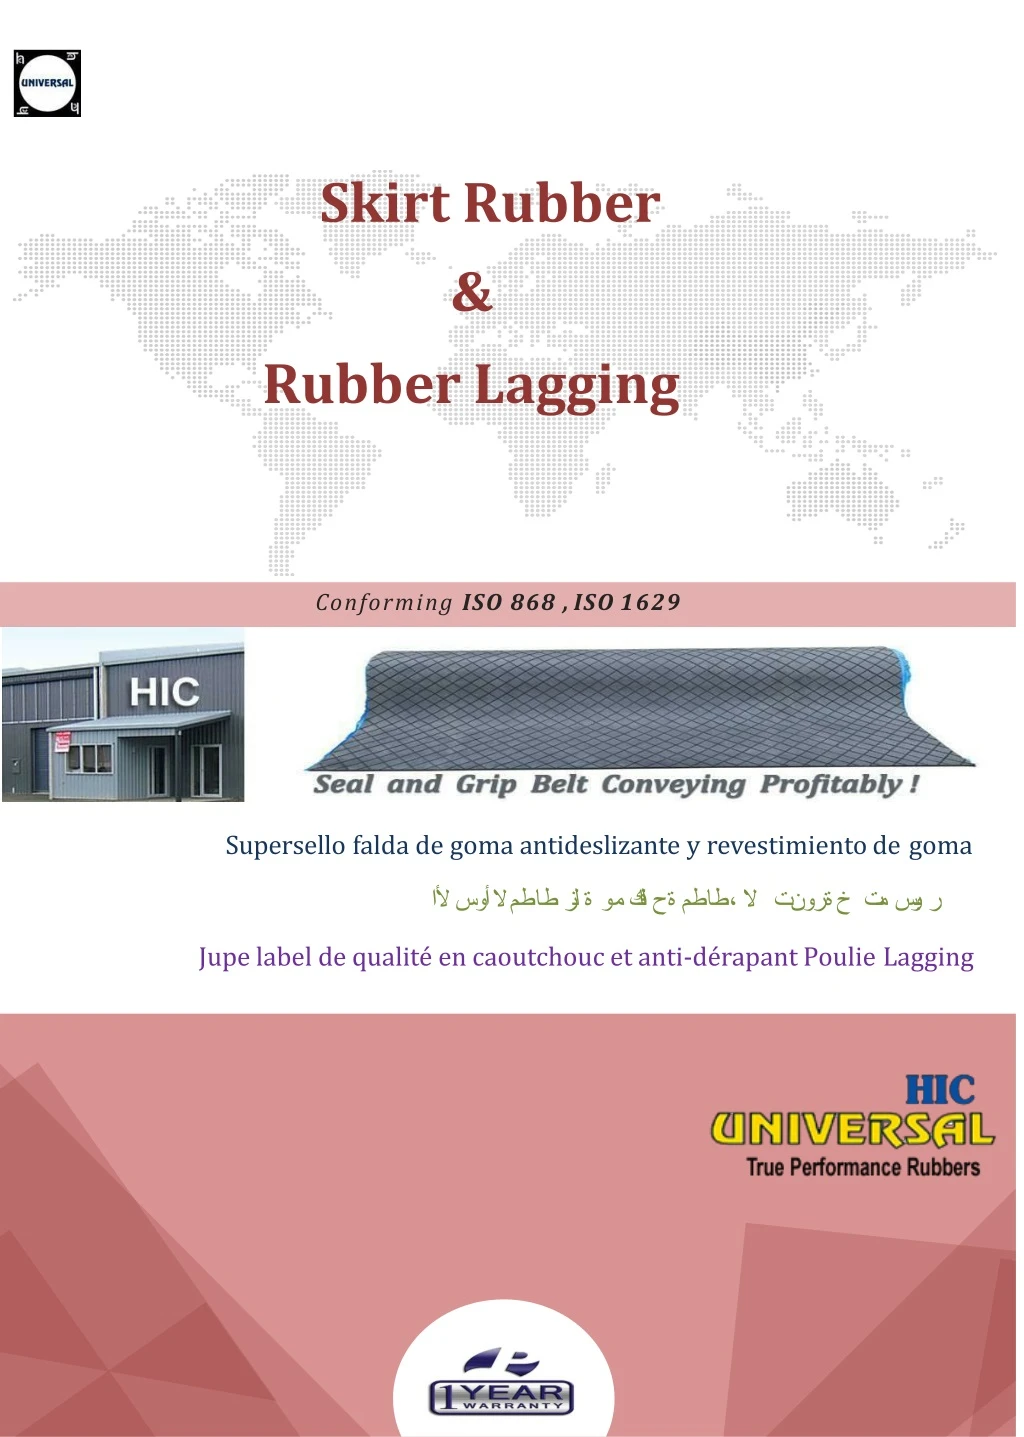 skirt rubber rubber lagging